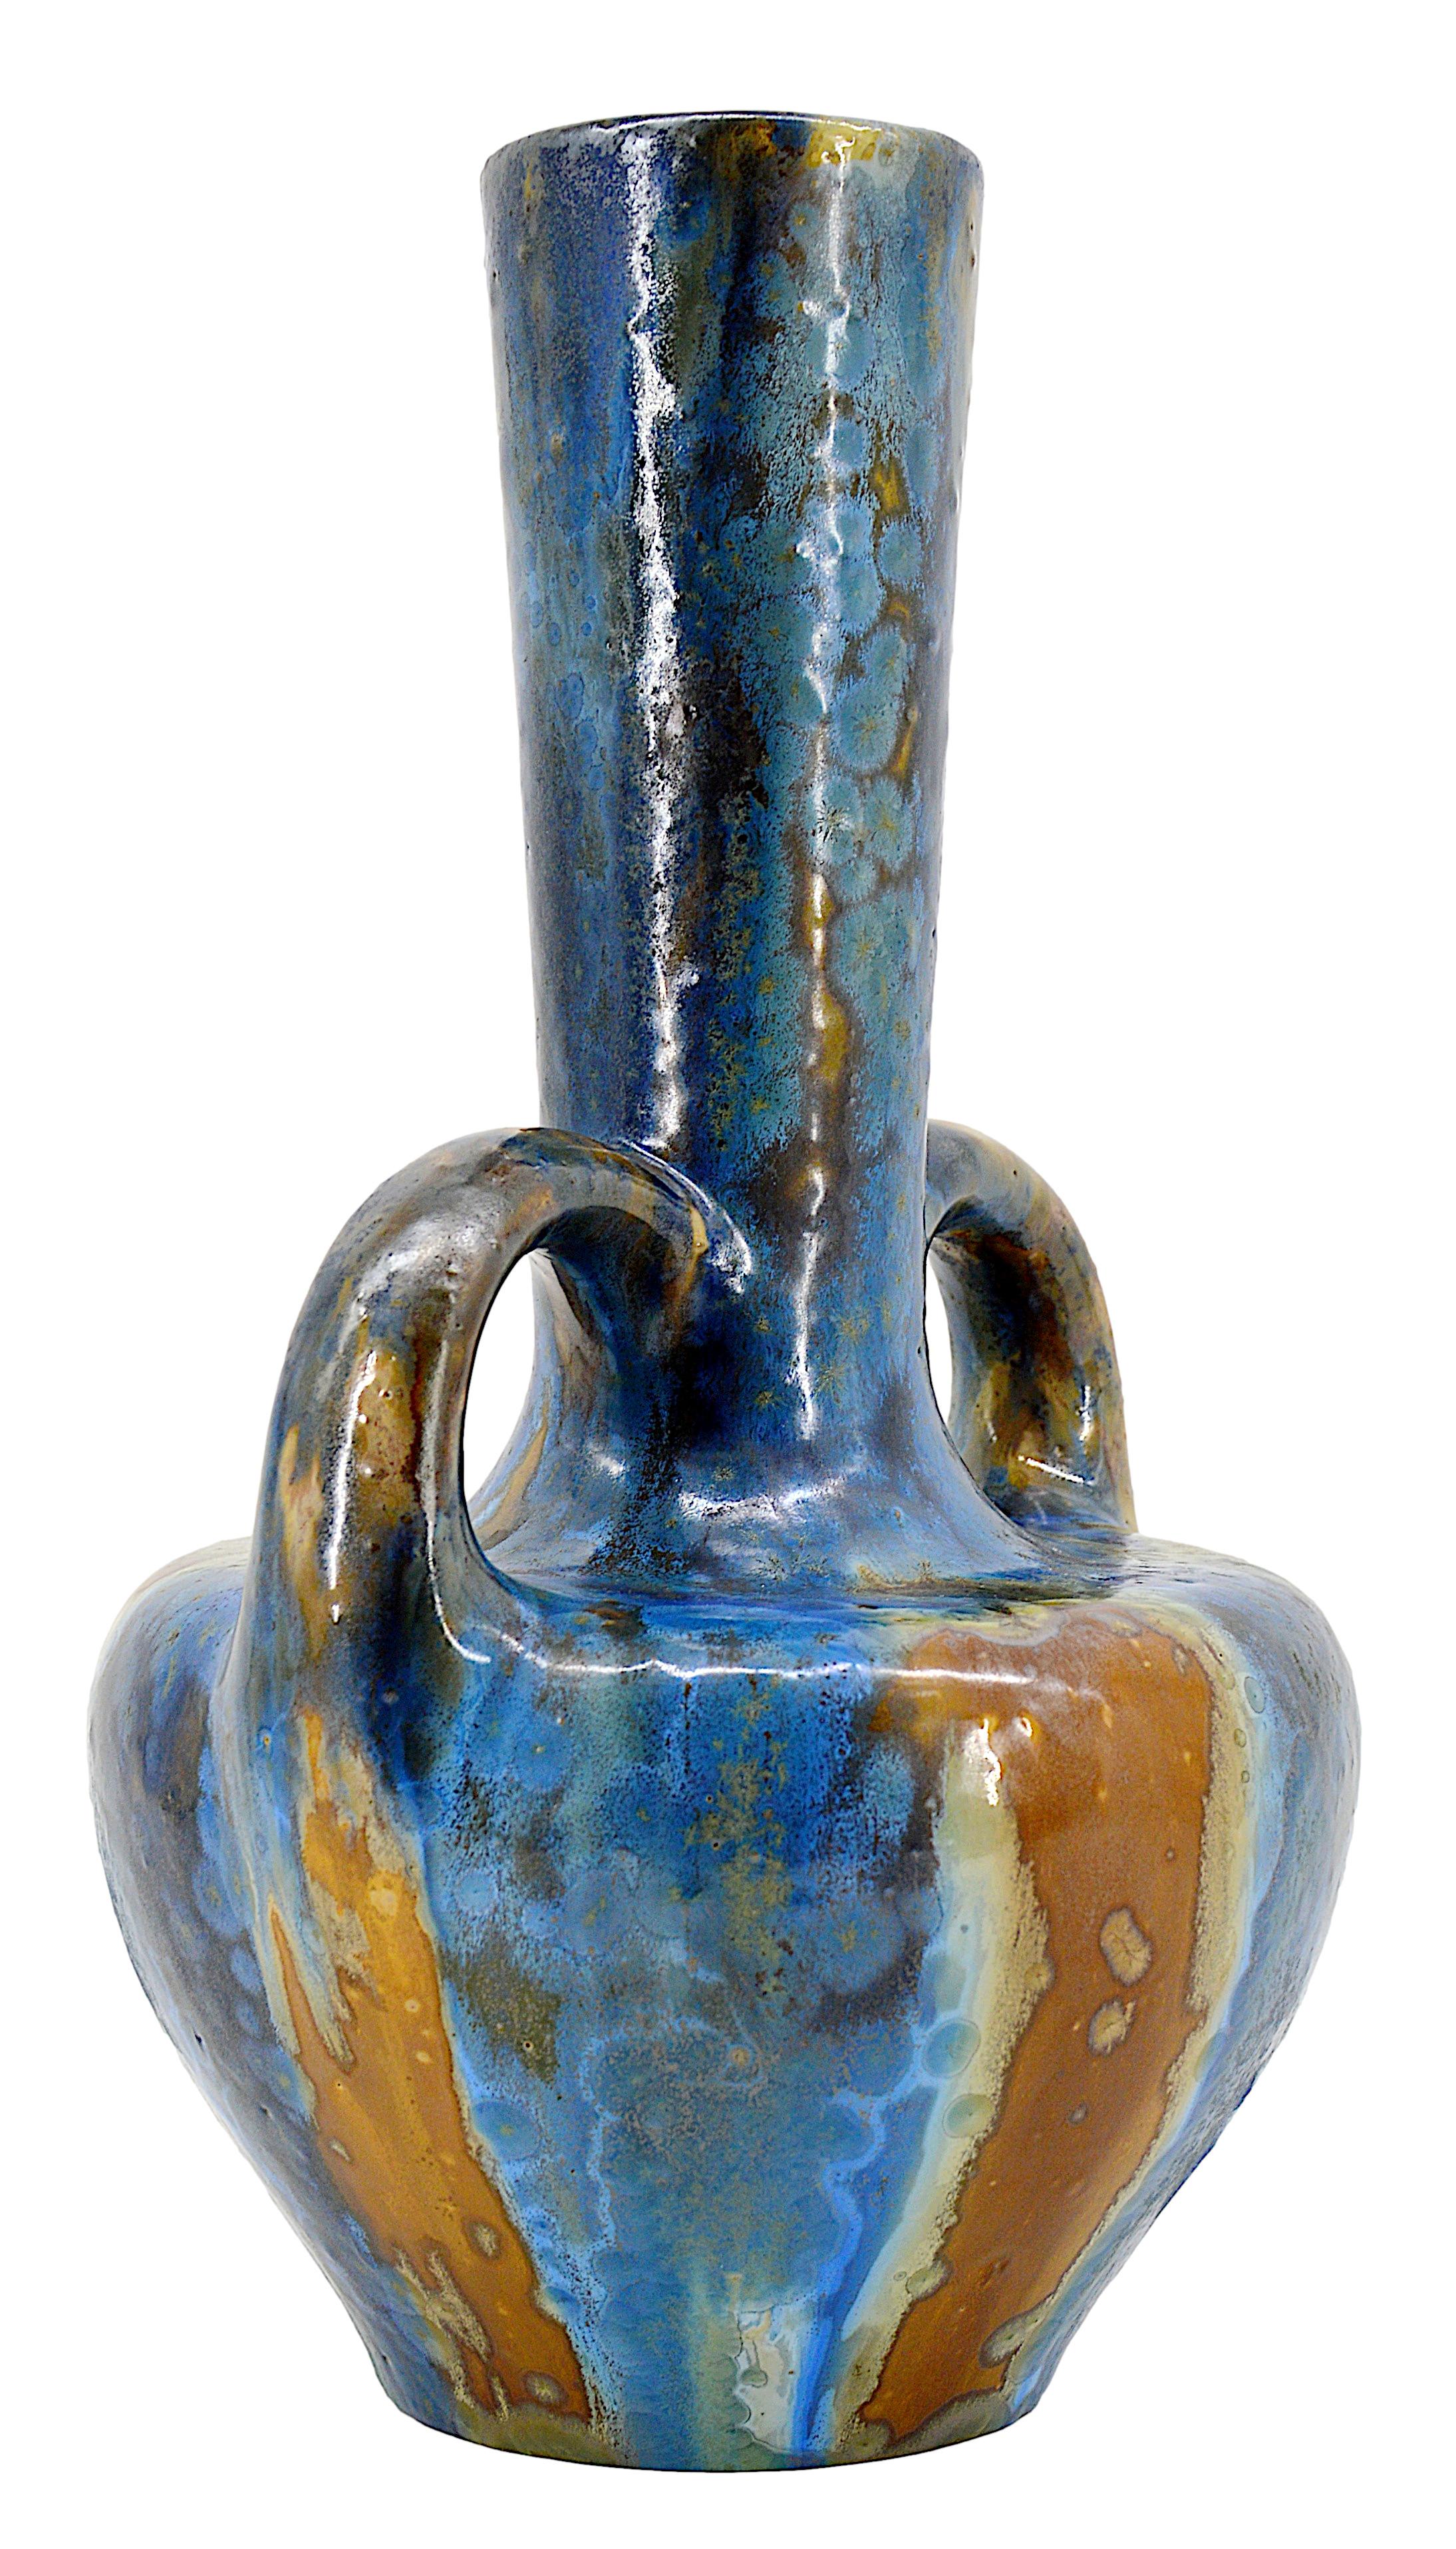 Vase en grès Art déco de PIERREFONDS, France, années 1920. Émail superbe et épais. Les couleurs varient légèrement en fonction de la lumière. Hauteur : 37cm - 14.6 in. Largeur : 22.5cm - 8.9 in. , Profondeur : 21cm - 8.3 in. Excellent état ! Timbre